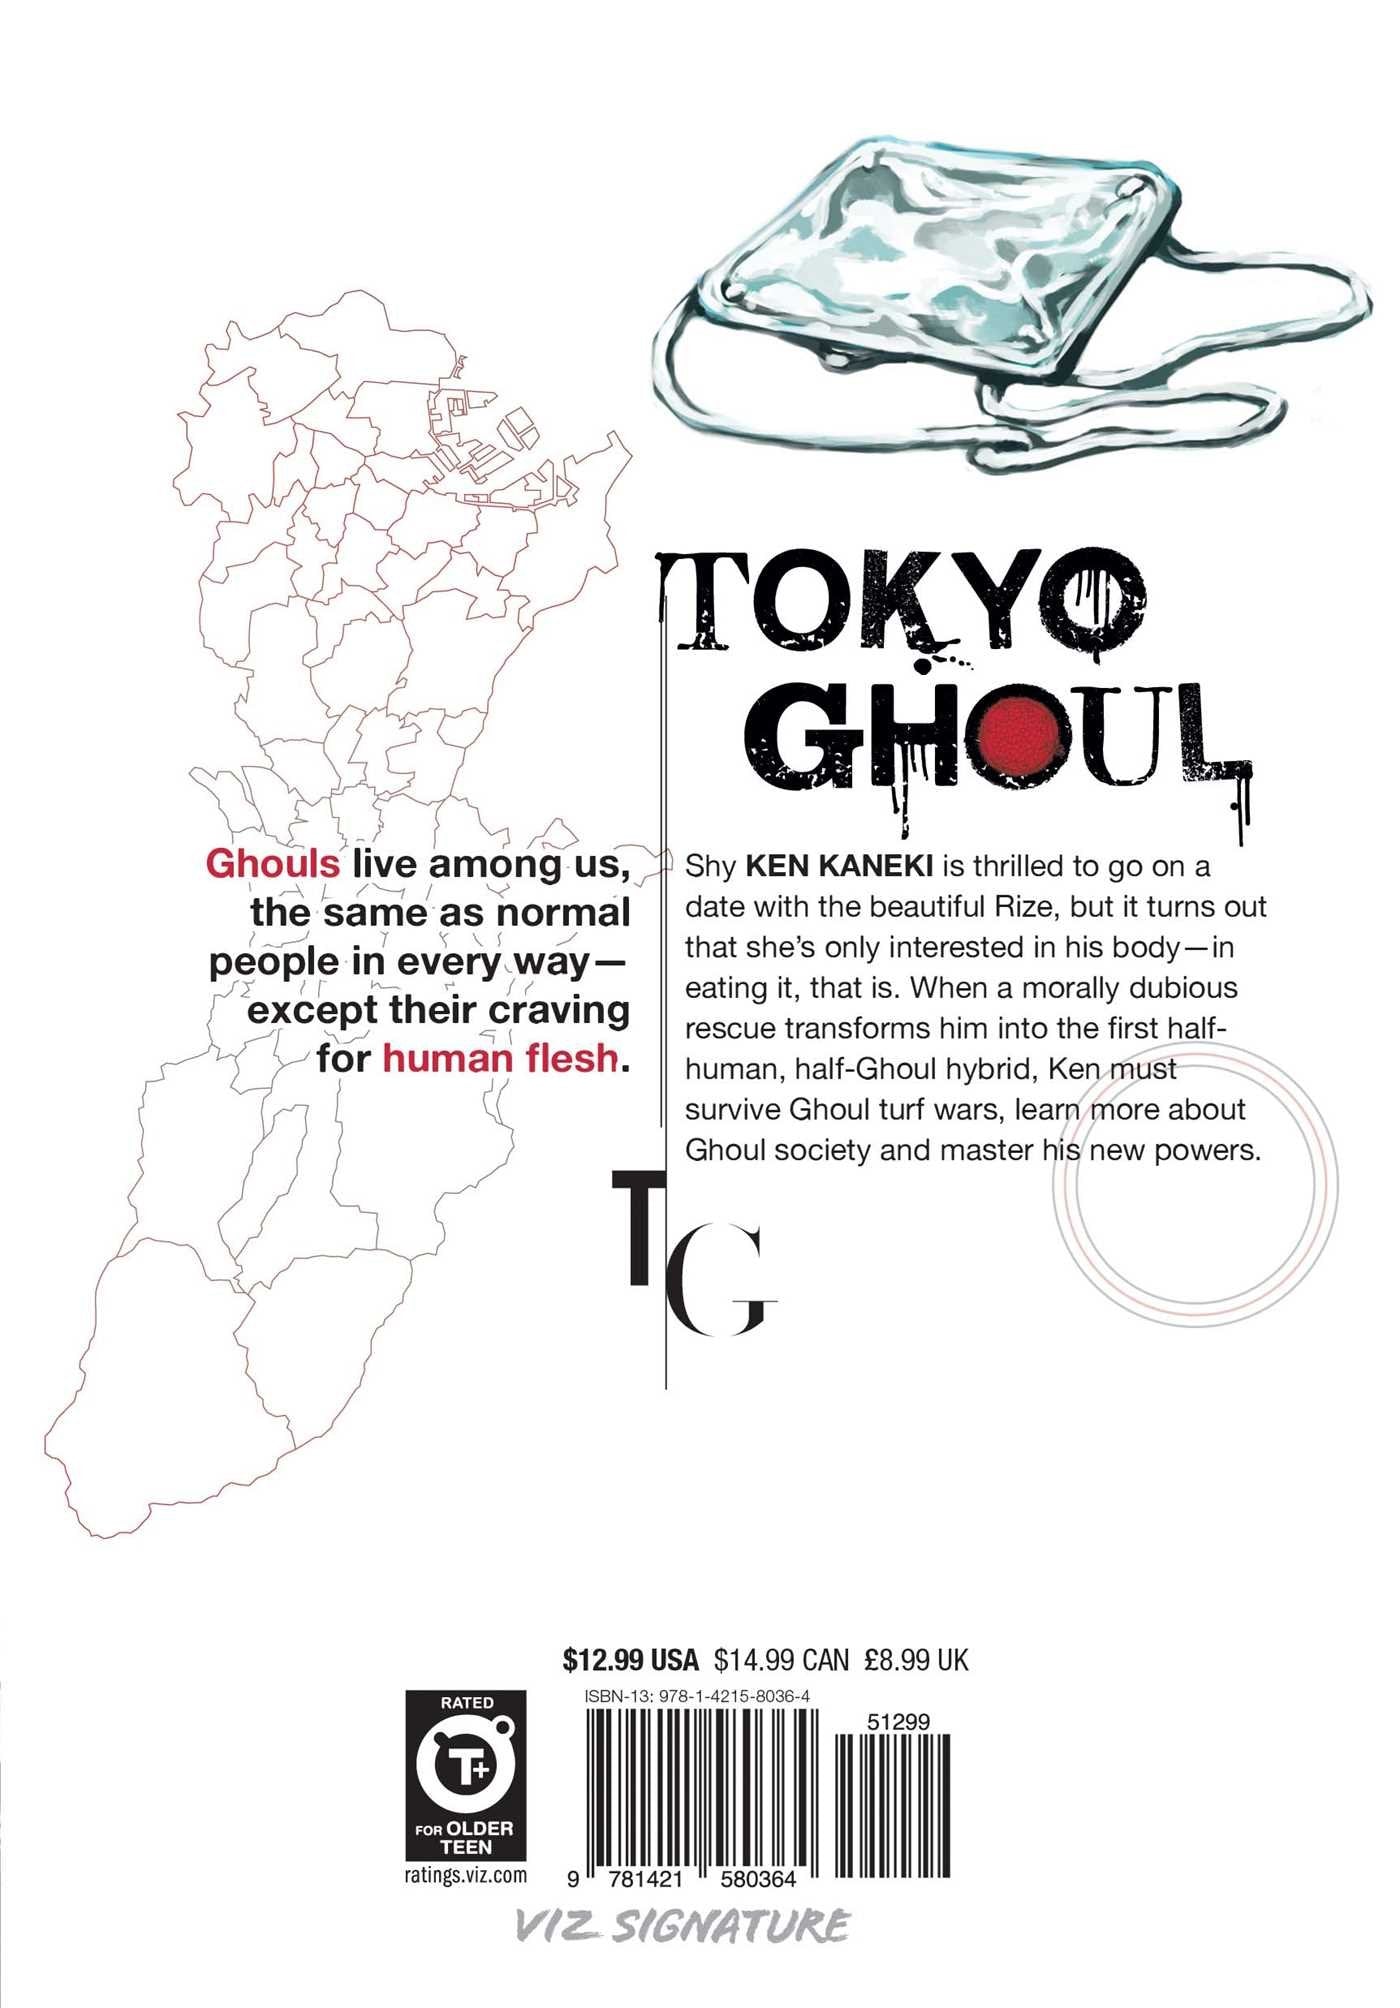 Tokyo Ghoul, Vol. 1 عربي